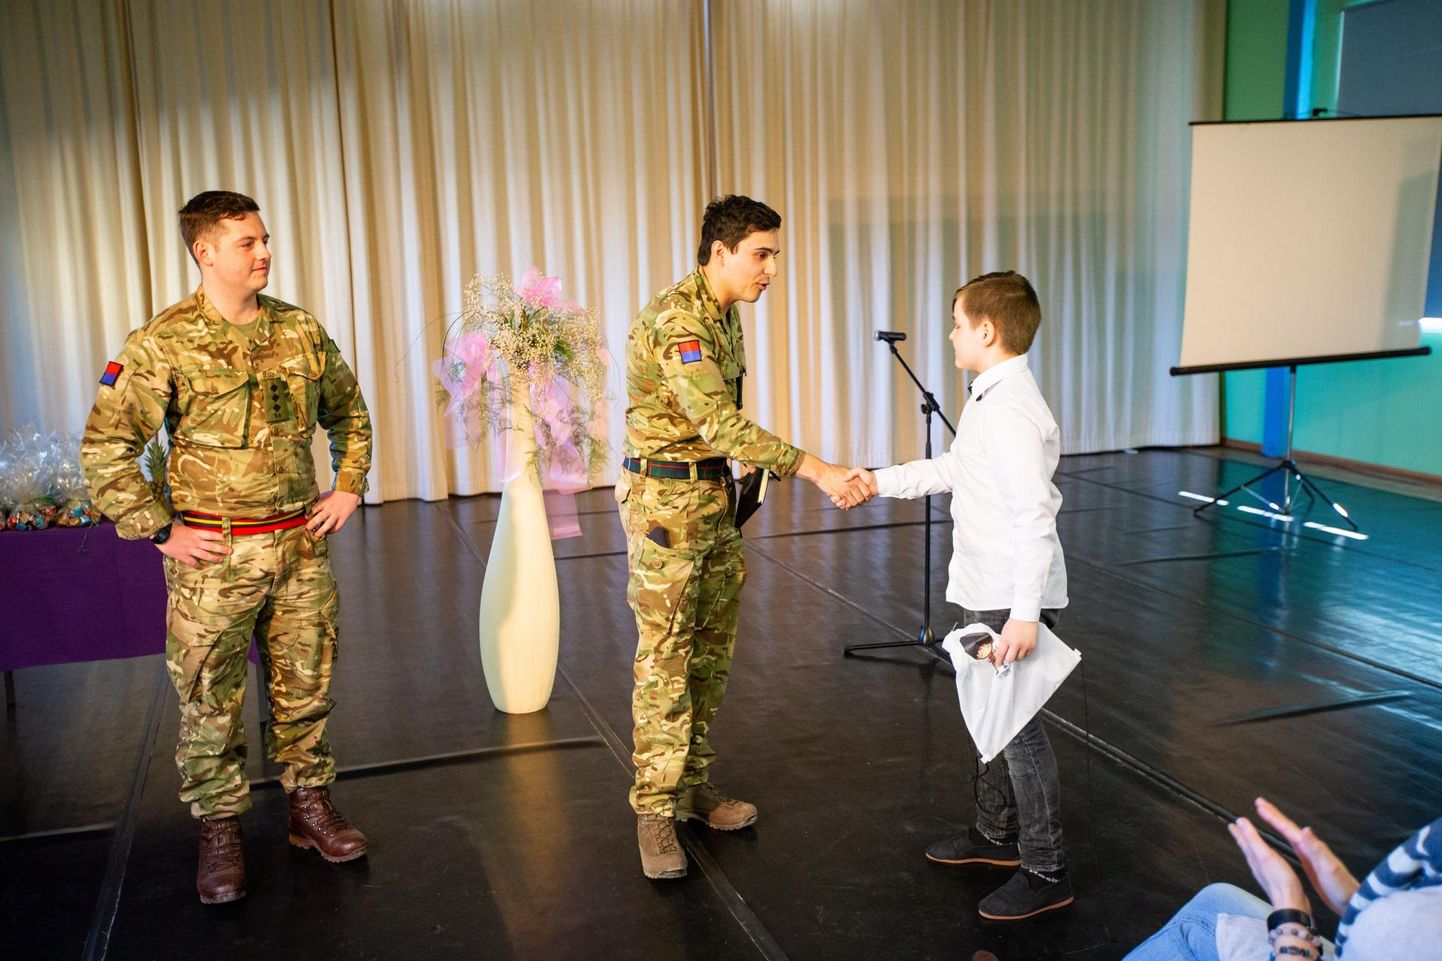 Eesti laste selge hääldus üllatas sõdureid ja hea meelega oleks nad veelgi rohkemaid lapsi autasustanud.